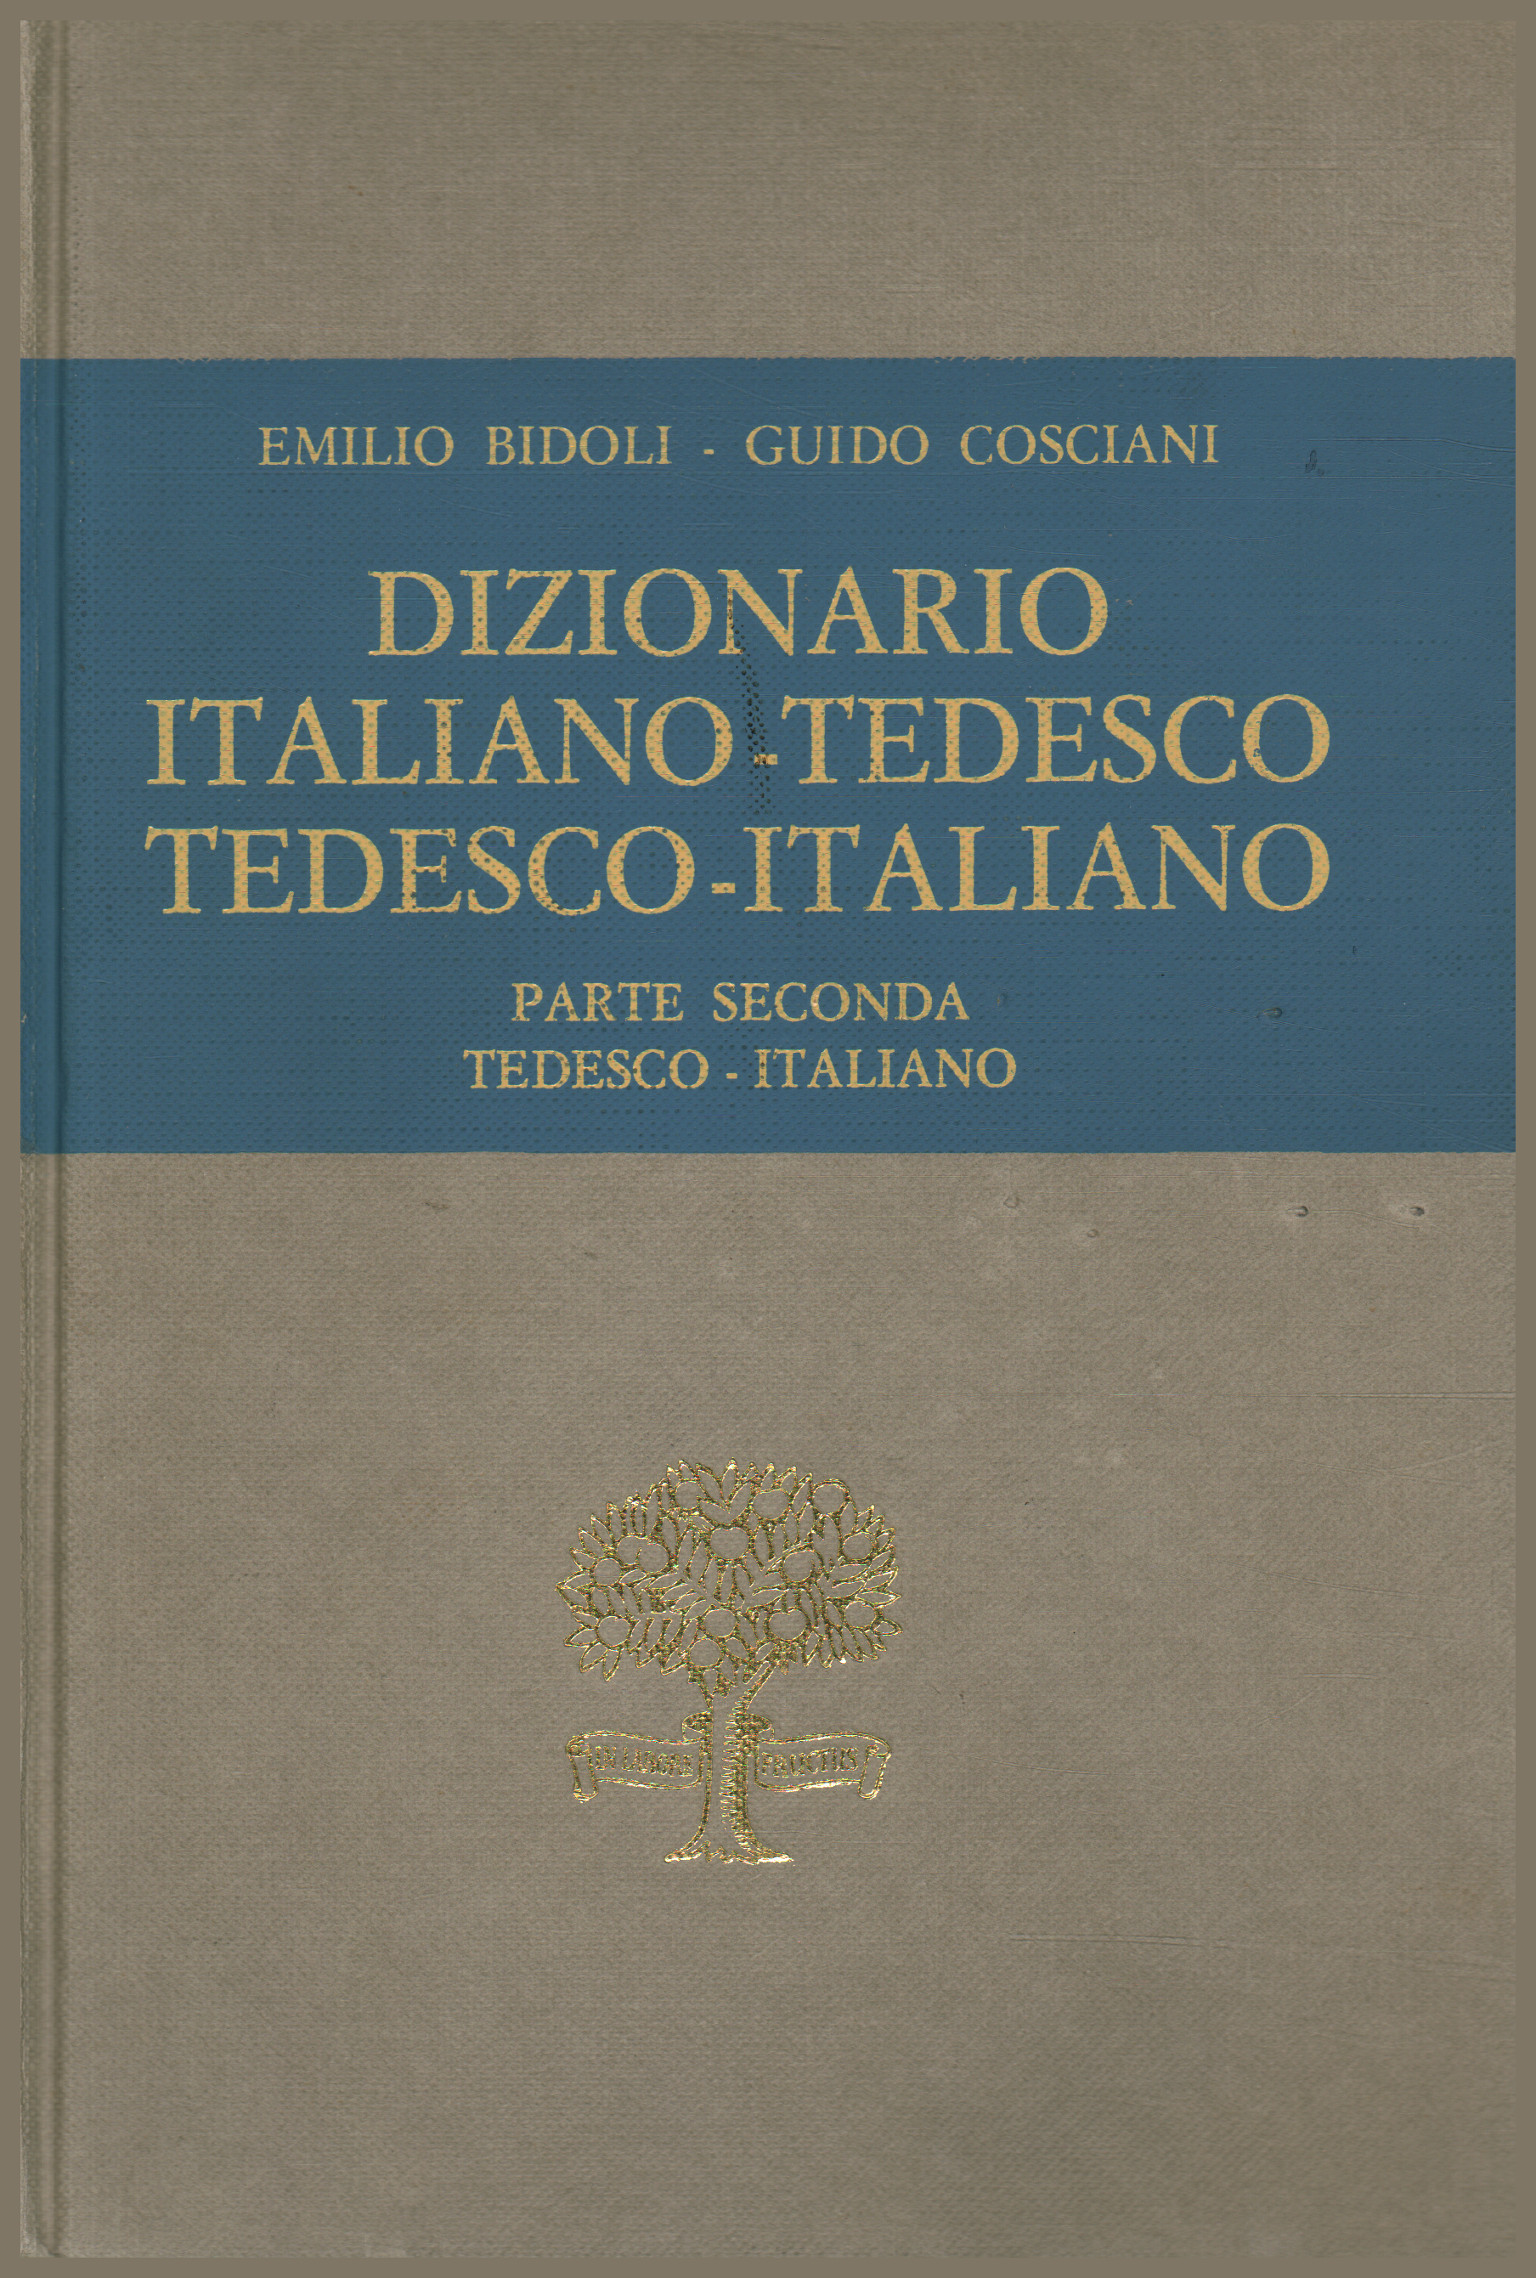 Diccionario italiano-alemán alemán-italiano. Part, Emilio Bidoli Guido Cosciani